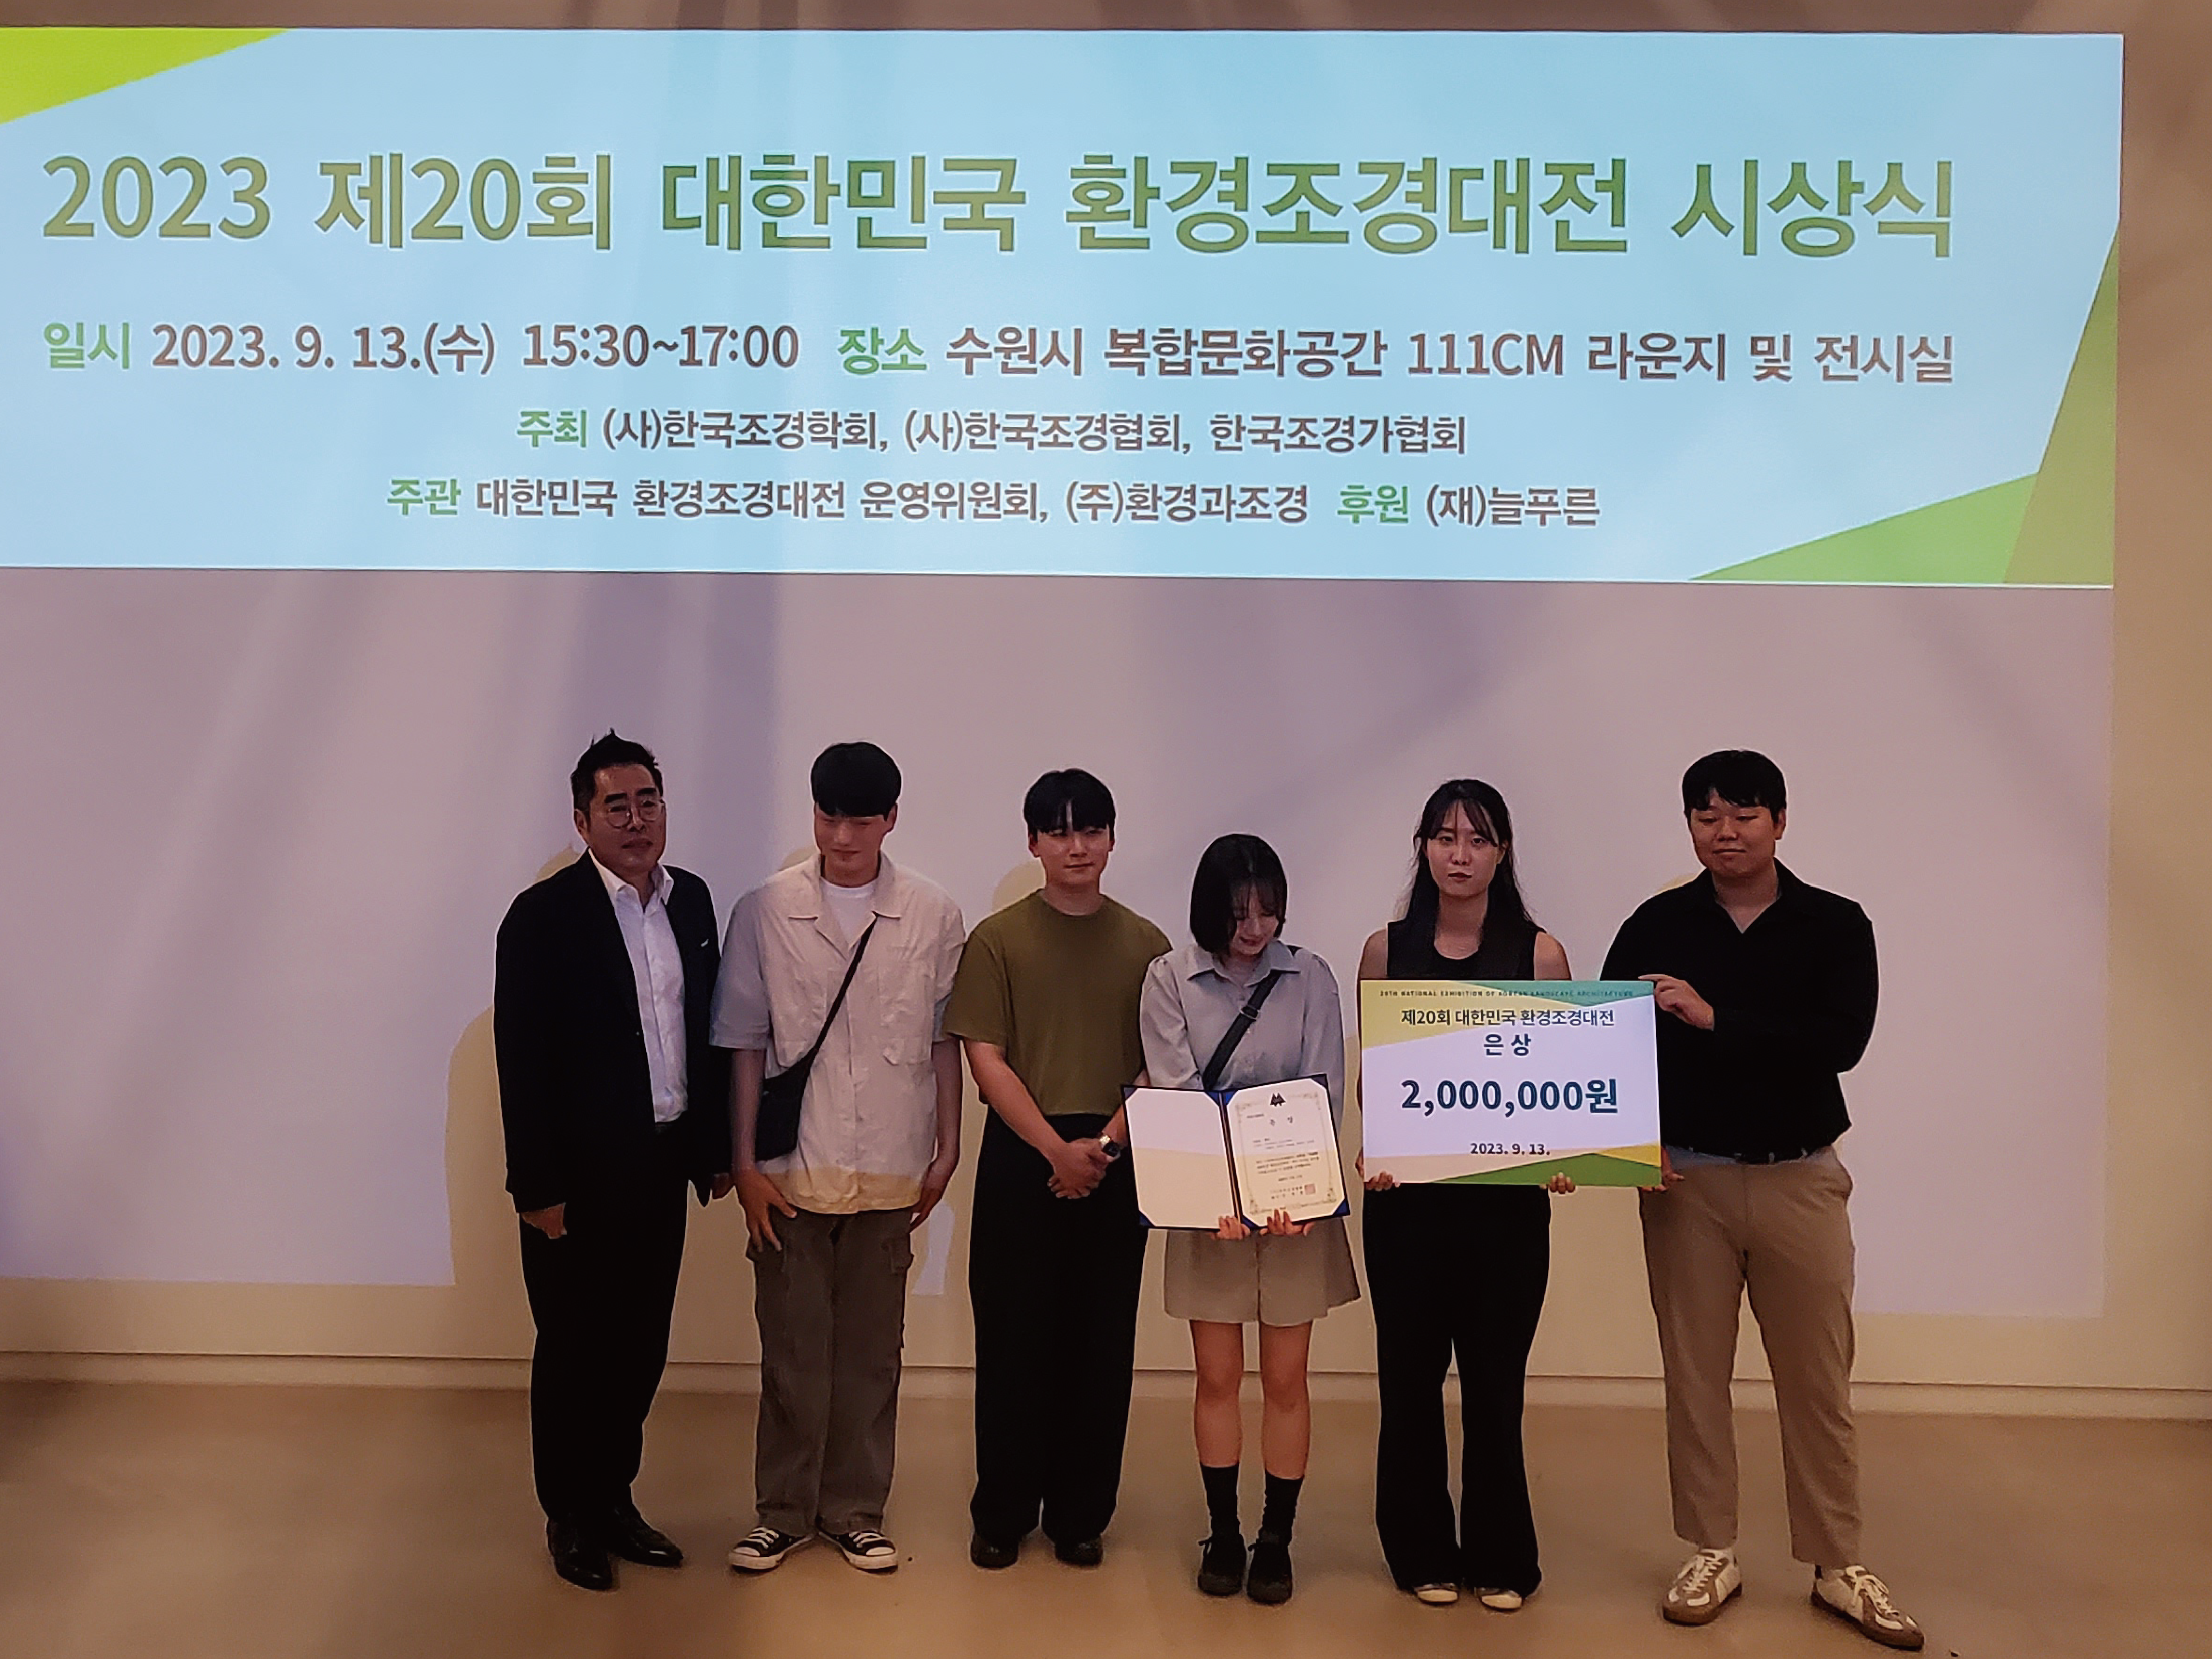 청주대학교 조경도시학과 학생이 김현우(4학년), 김한빈(4학년), 김지응(4학년), 박초현(4학년), 안민지(4학년) 학생이 은상을 수상했다 ‘제20회 '환경조경대전’에서 은상을 수상했다.